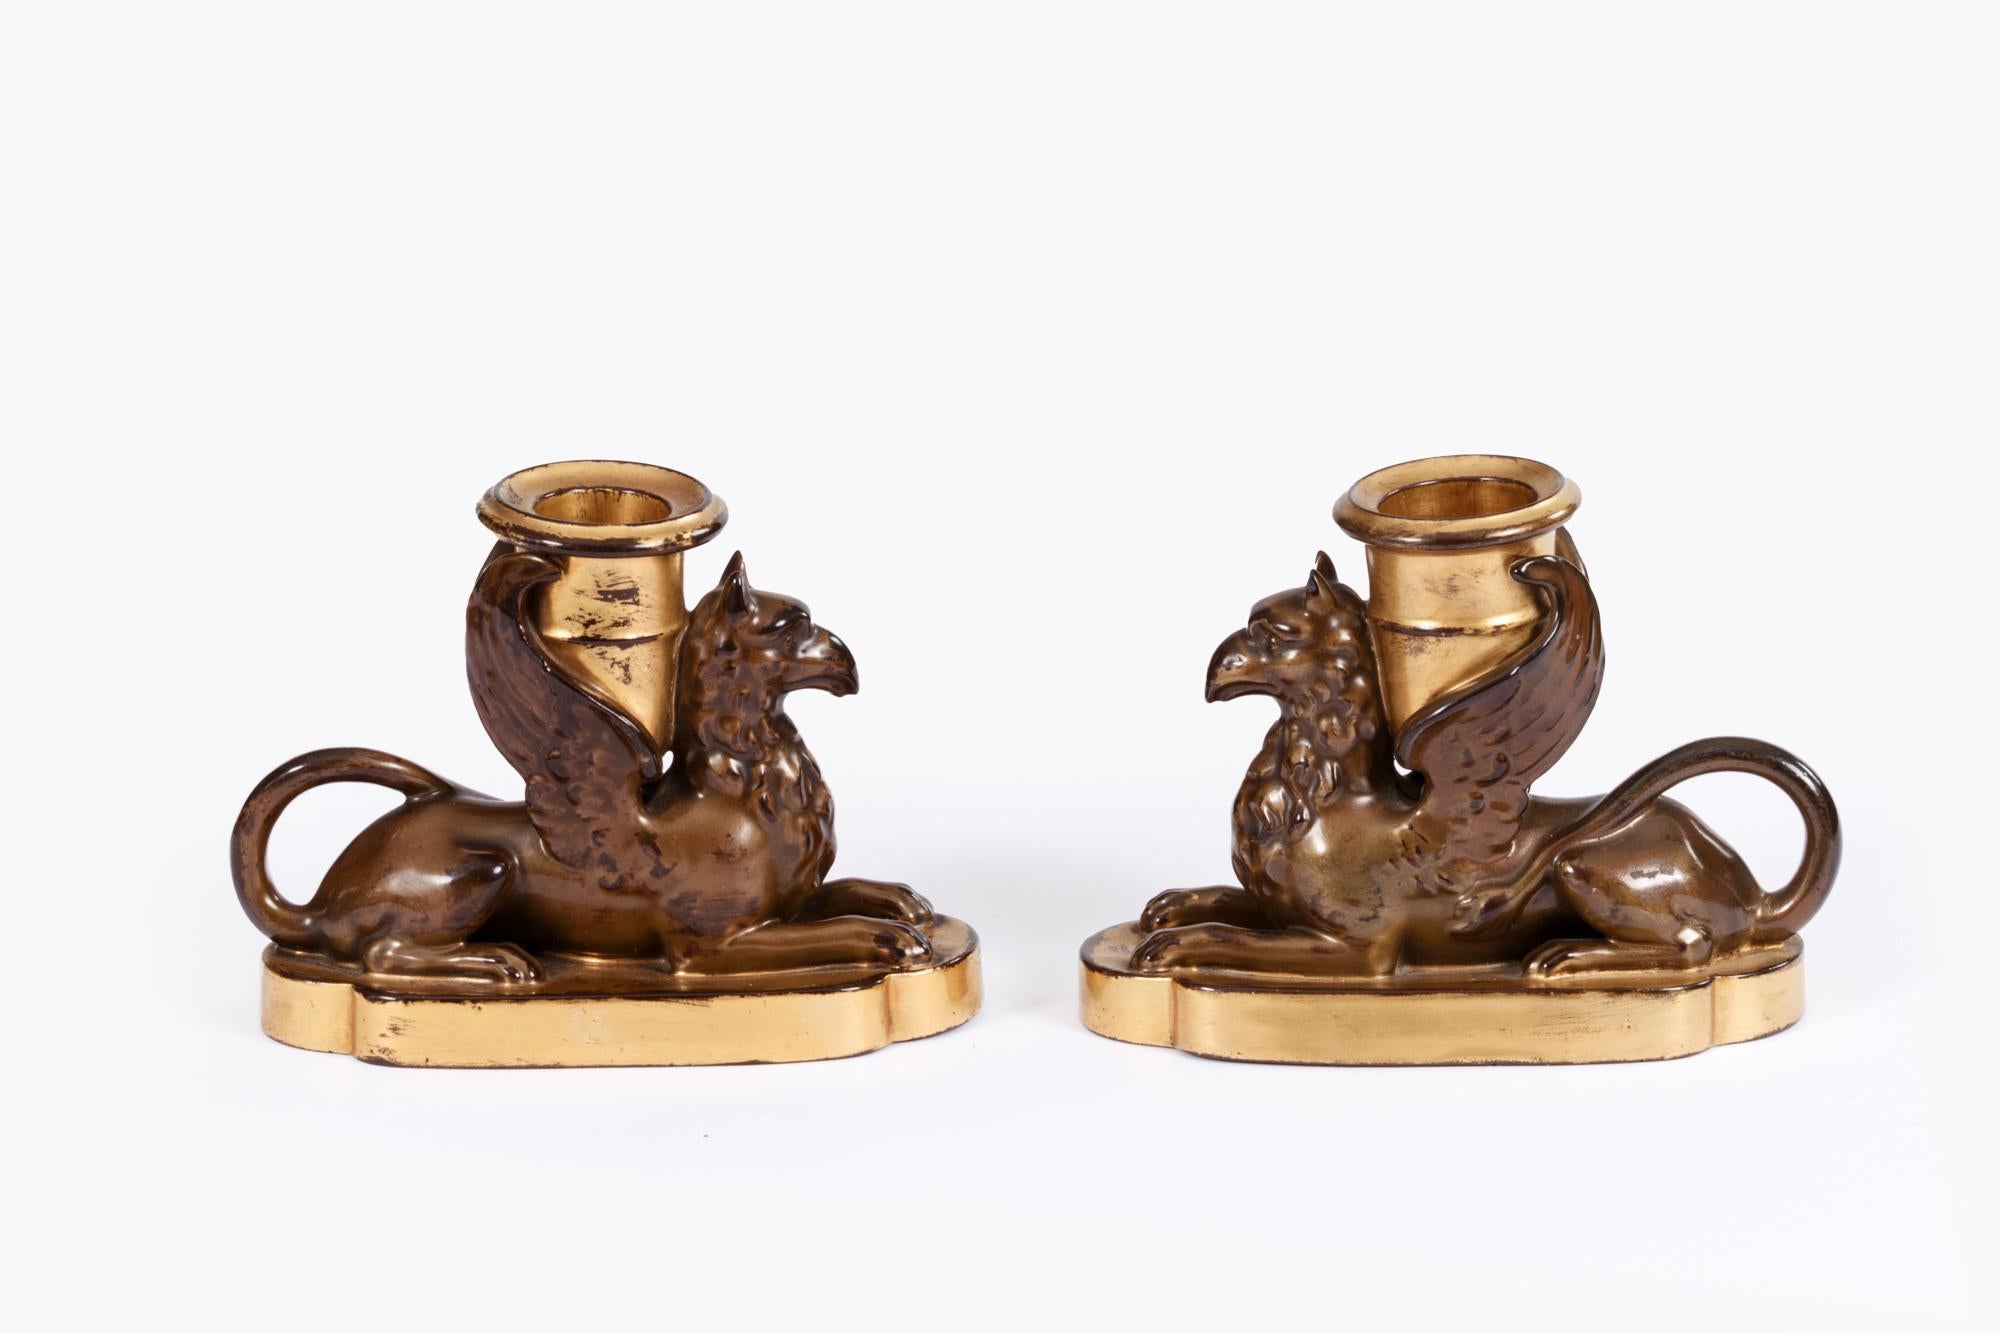 Paar englische Worcester-Porzellan-Greifchen aus dem frühen 19. Jahrhundert, verziert mit einem simulierten Bronzeeffekt, auf einem geformten, flachen Sockel, der mit Vergoldung verziert ist, mit einem vergoldeten Kerzenleuchter auf dem Rücken